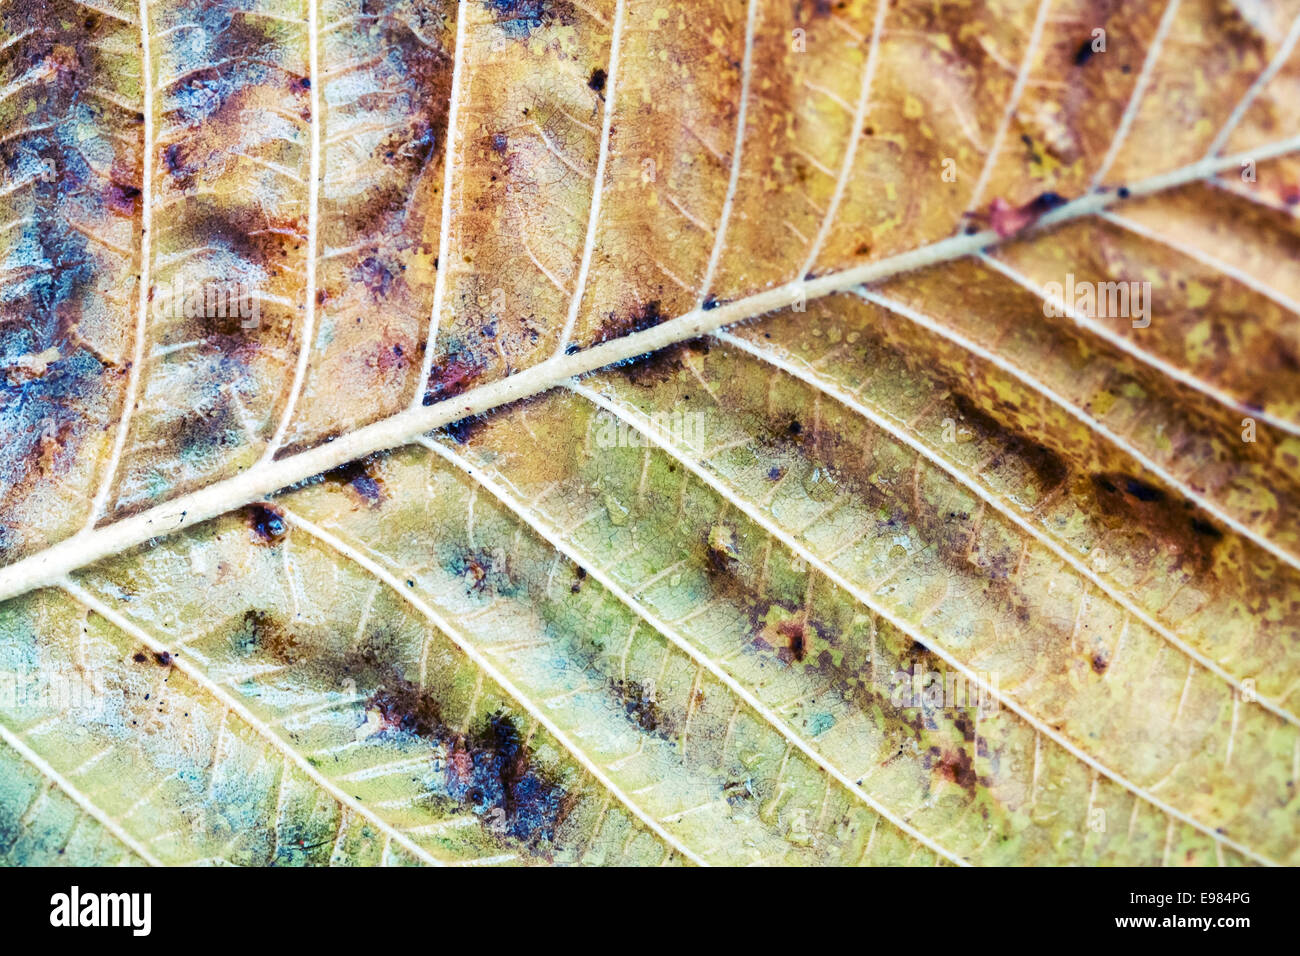 Herbst Baum Blatt, Makro-Foto mit Tiefenschärfe und straff-Effekt Stockfoto